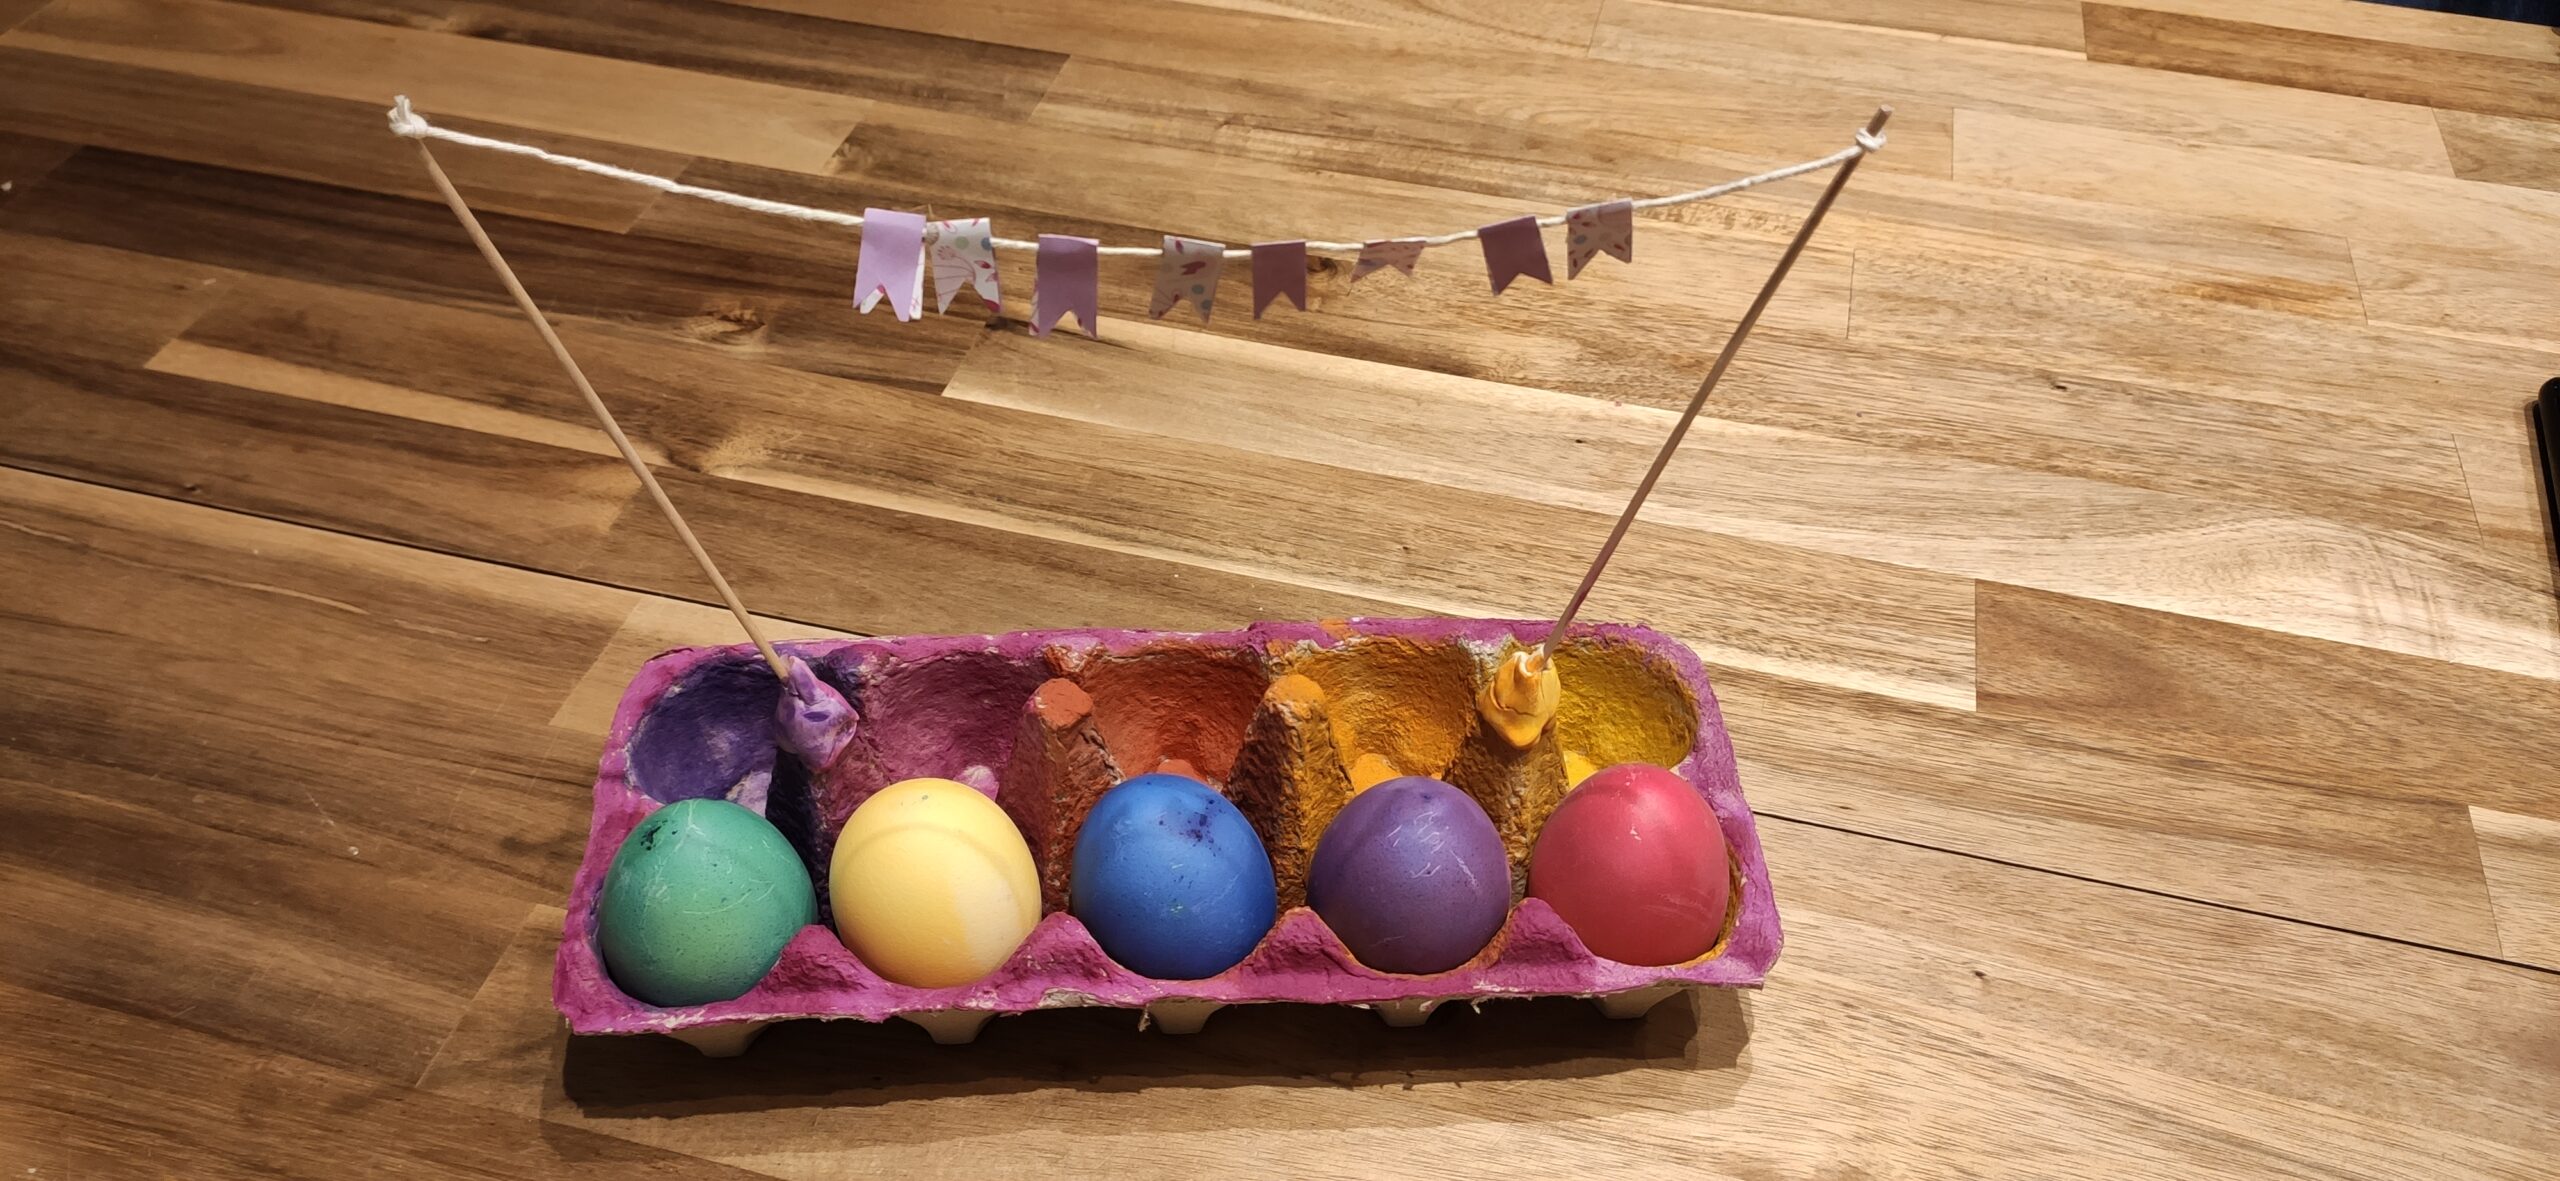 Bild zum Schritt 17 für die Kinder-Beschäftigung: 'Abschließend dekoriert ihr den Eierkarton z.B. mit Moos und andere...'